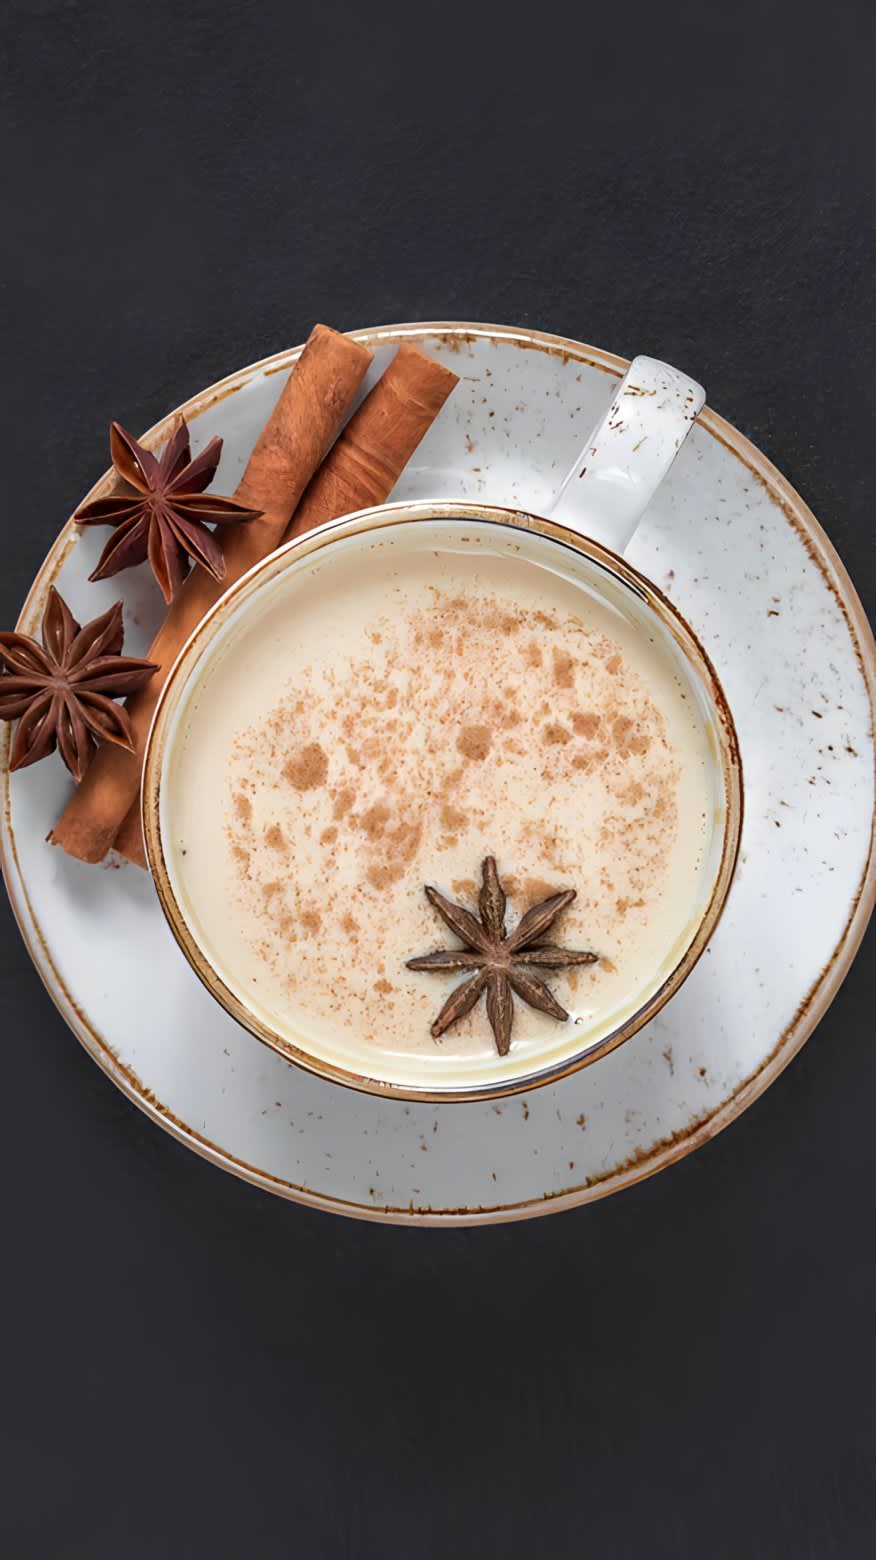 Mug of chai with cinnamon and star anise pod